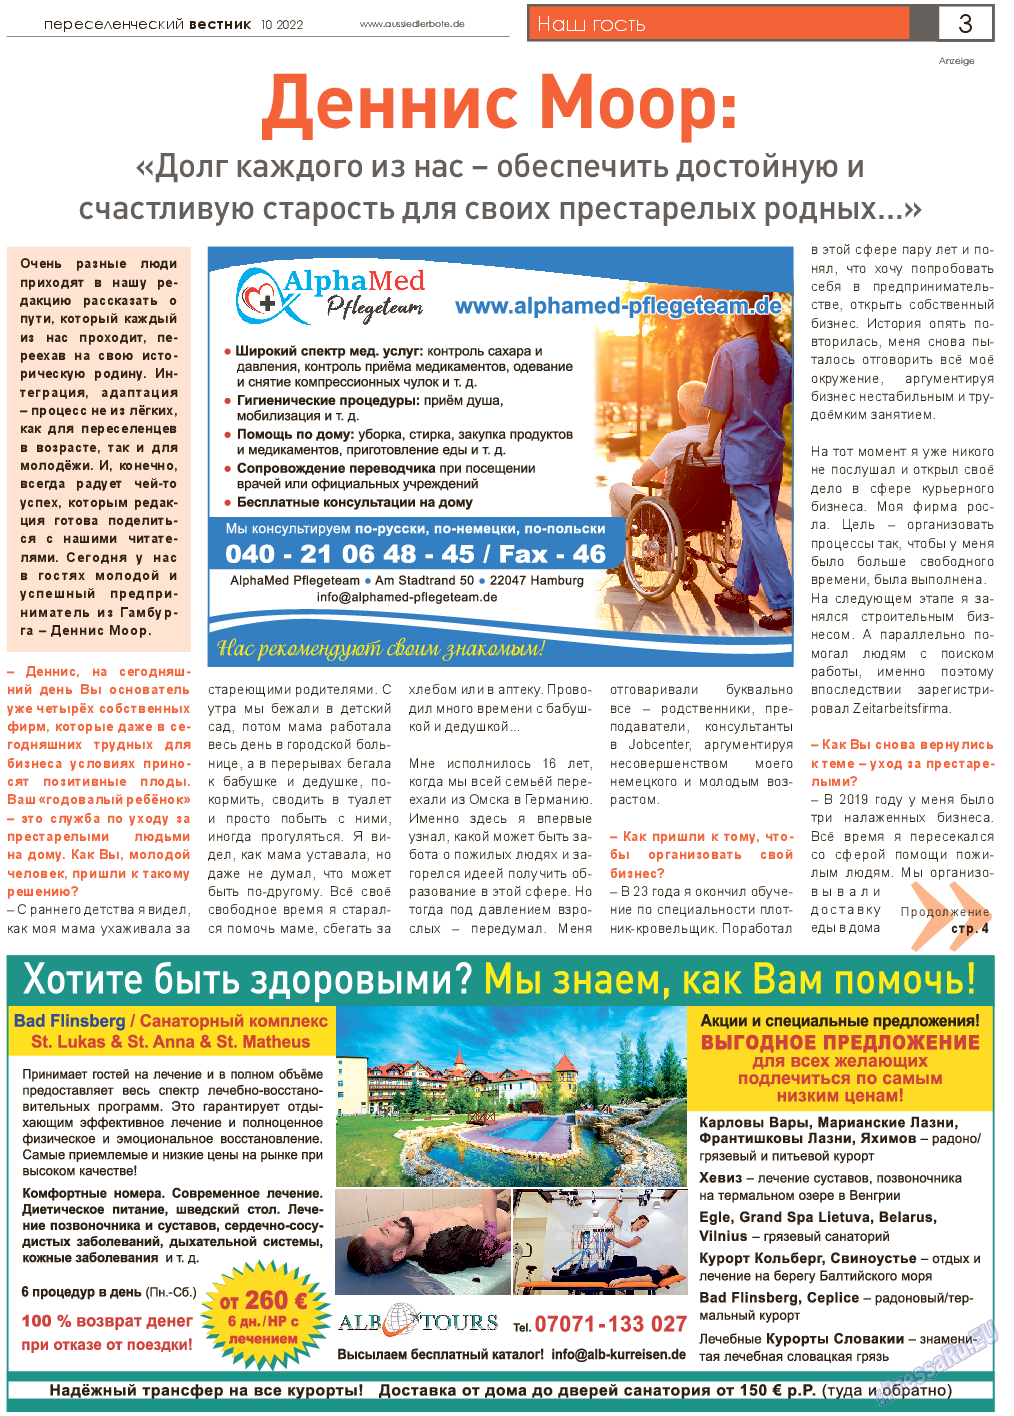 Переселенческий вестник, газета. 2022 №10 стр.3